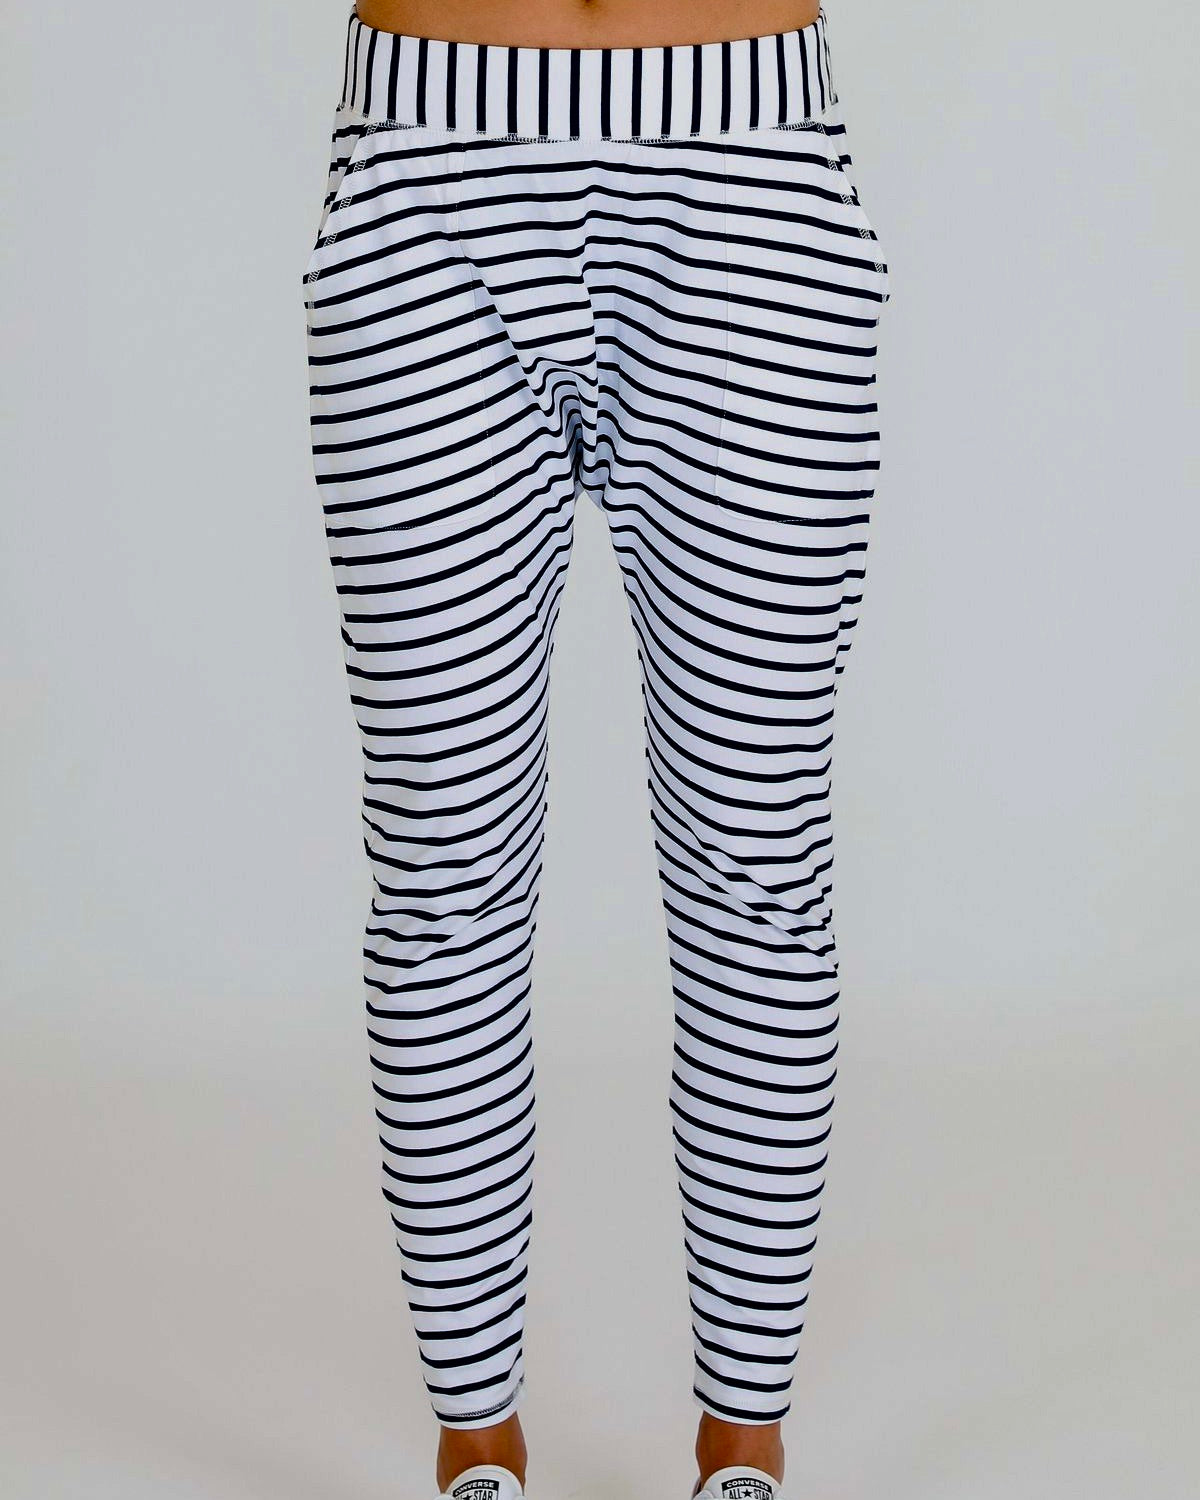 Stripe pants